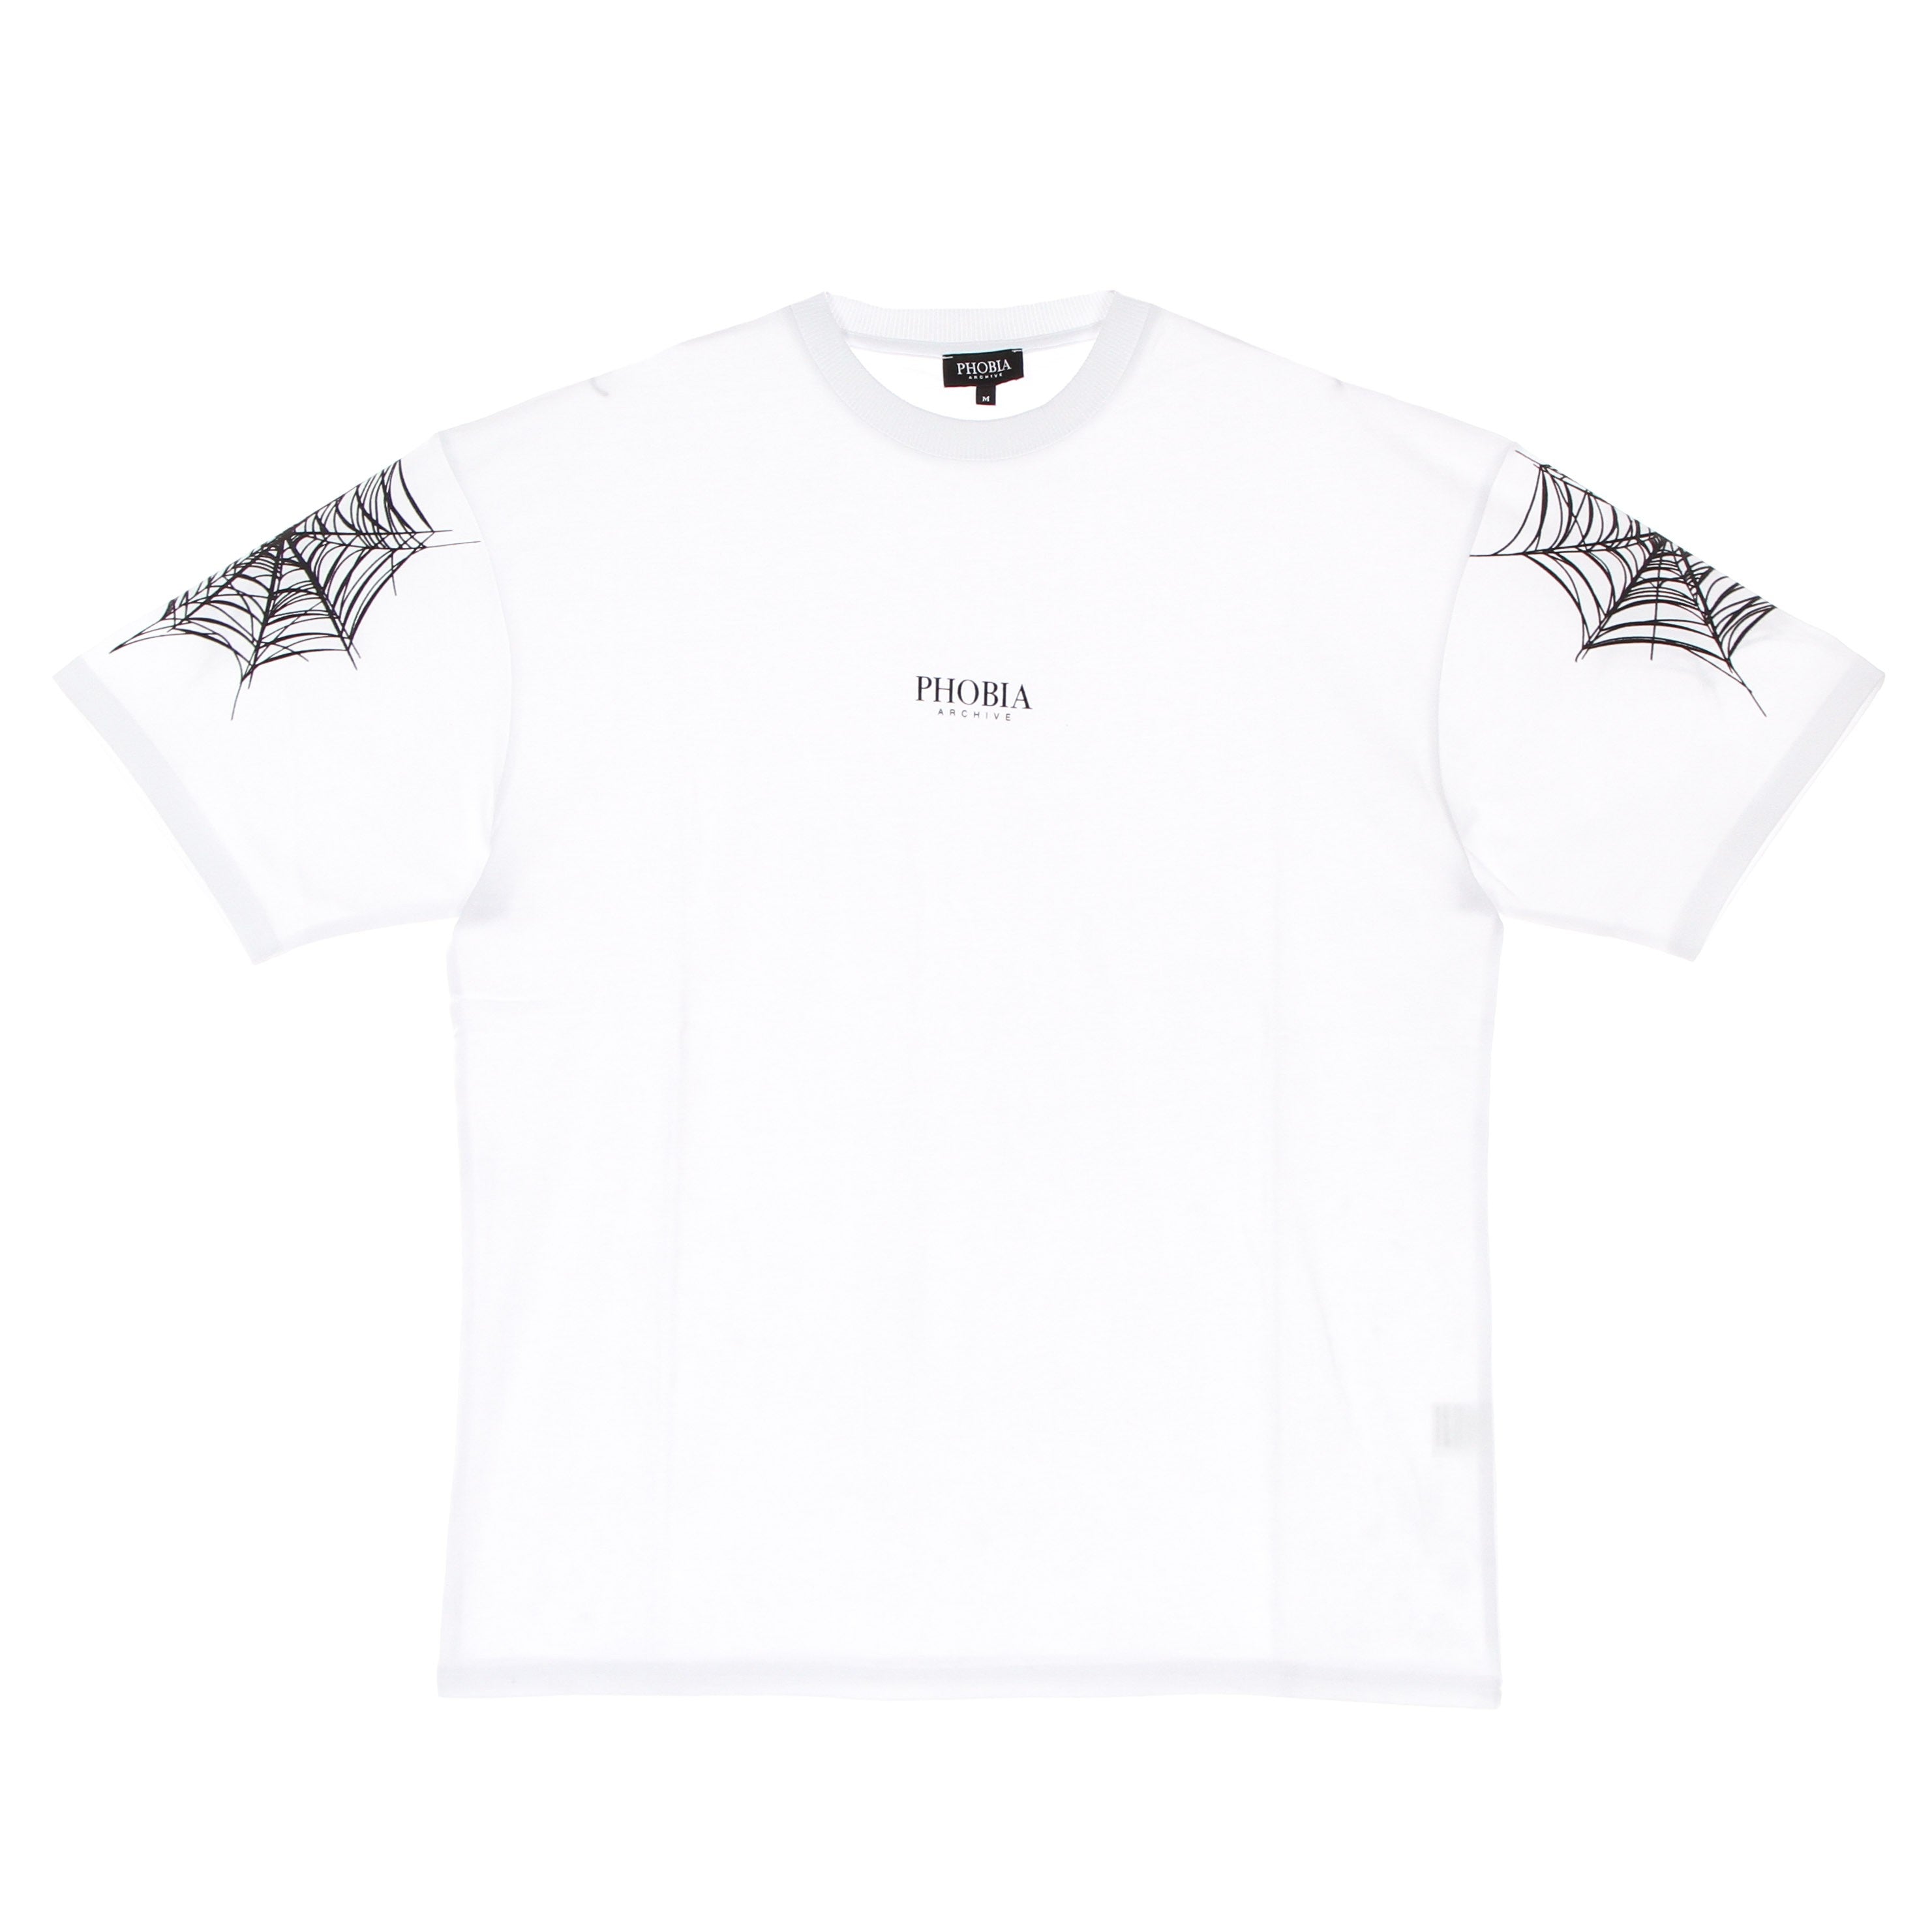 Cobweb Print Tee Men's T-Shirt White/black